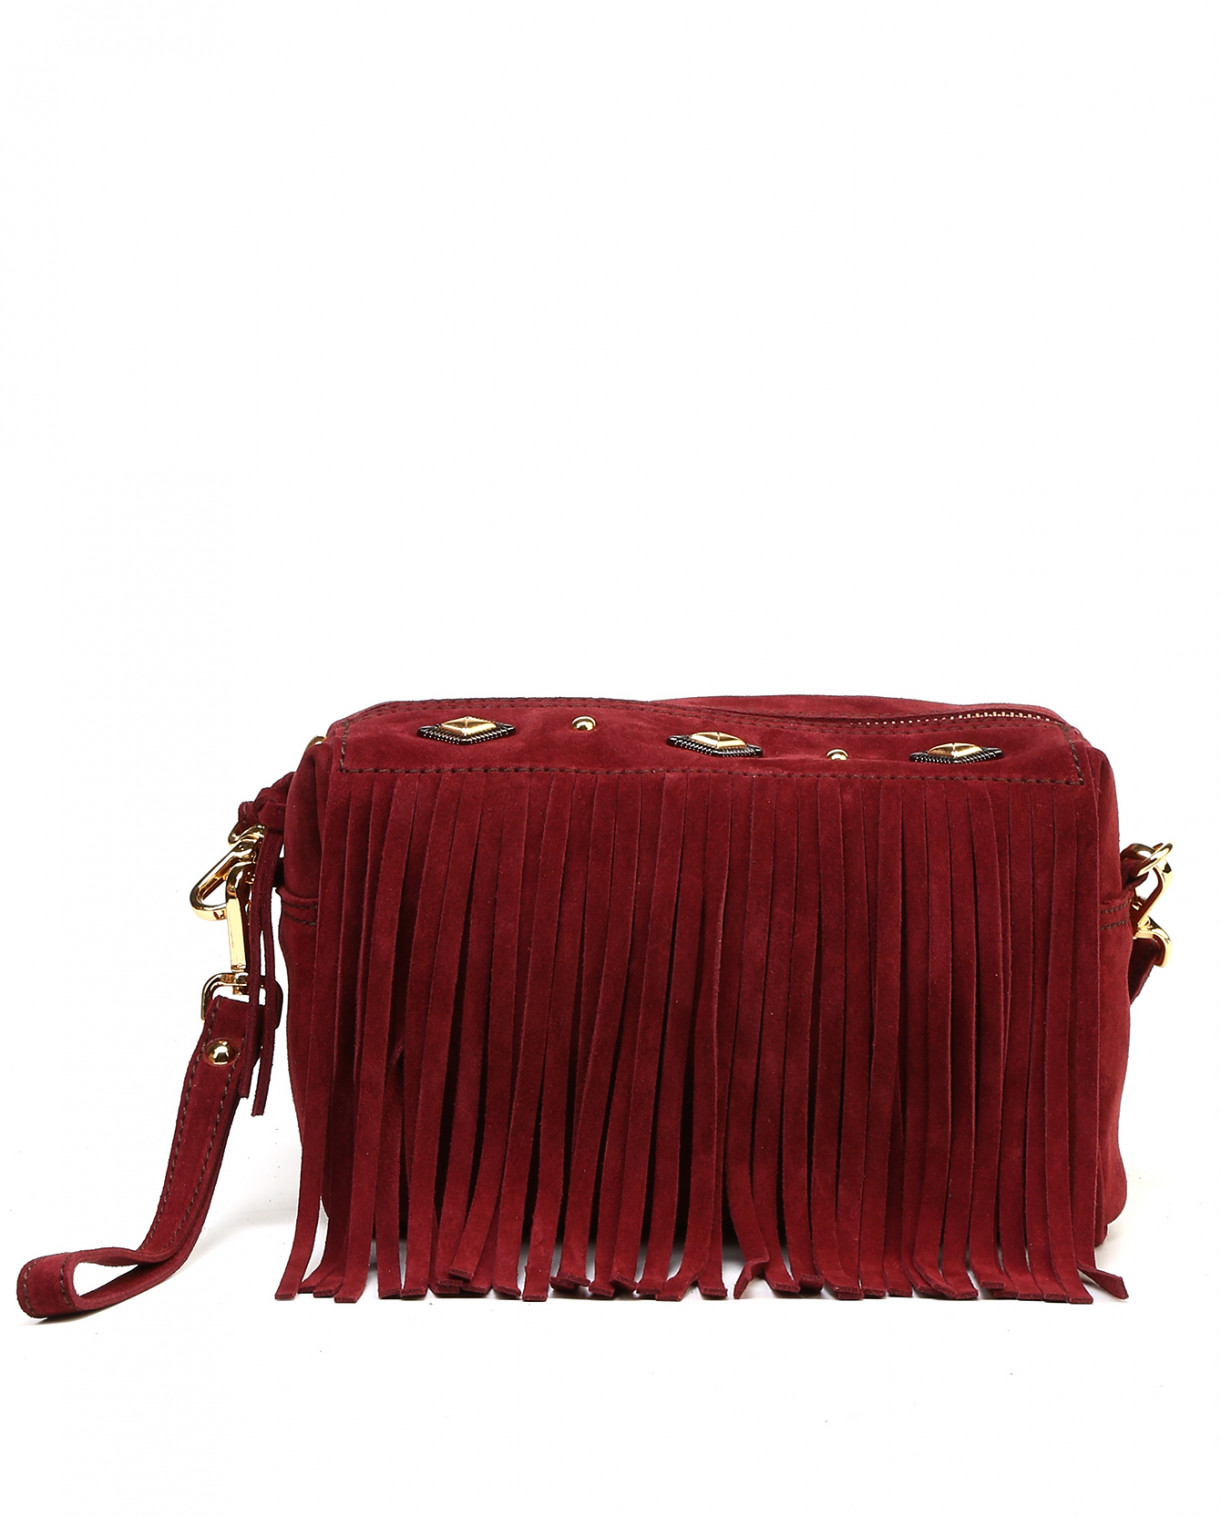 Замшевая сумка с бахромой, заклепками и ремнем через плечо Mercules  –  Общий вид  – Цвет:  Красный